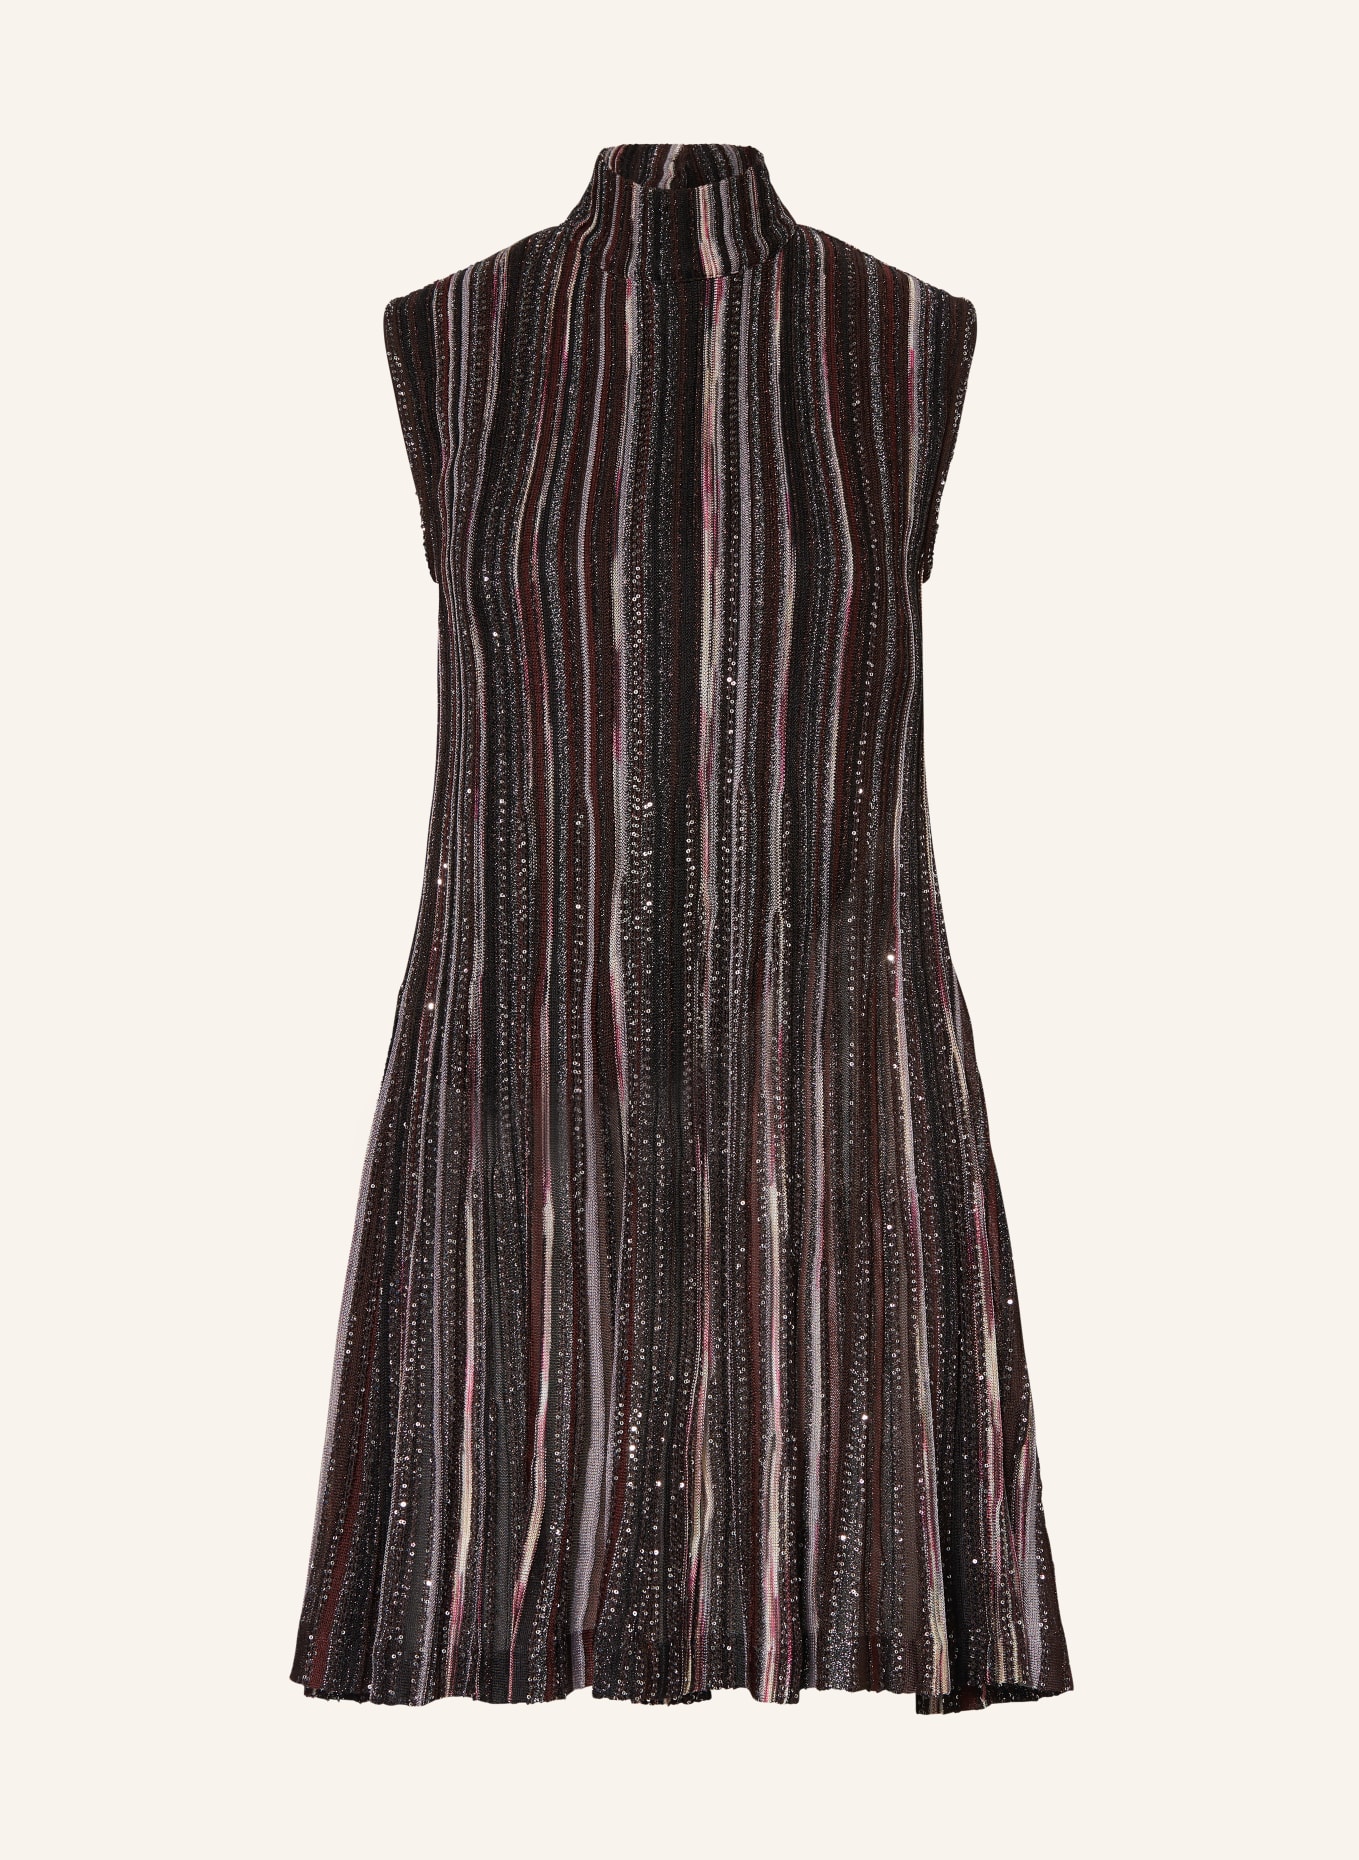 MISSONI Kleid mit Glitzergarn und Pailletten, Farbe: DUNKELROT/ DUNKELBRAUN/ BEIGE (Bild 1)